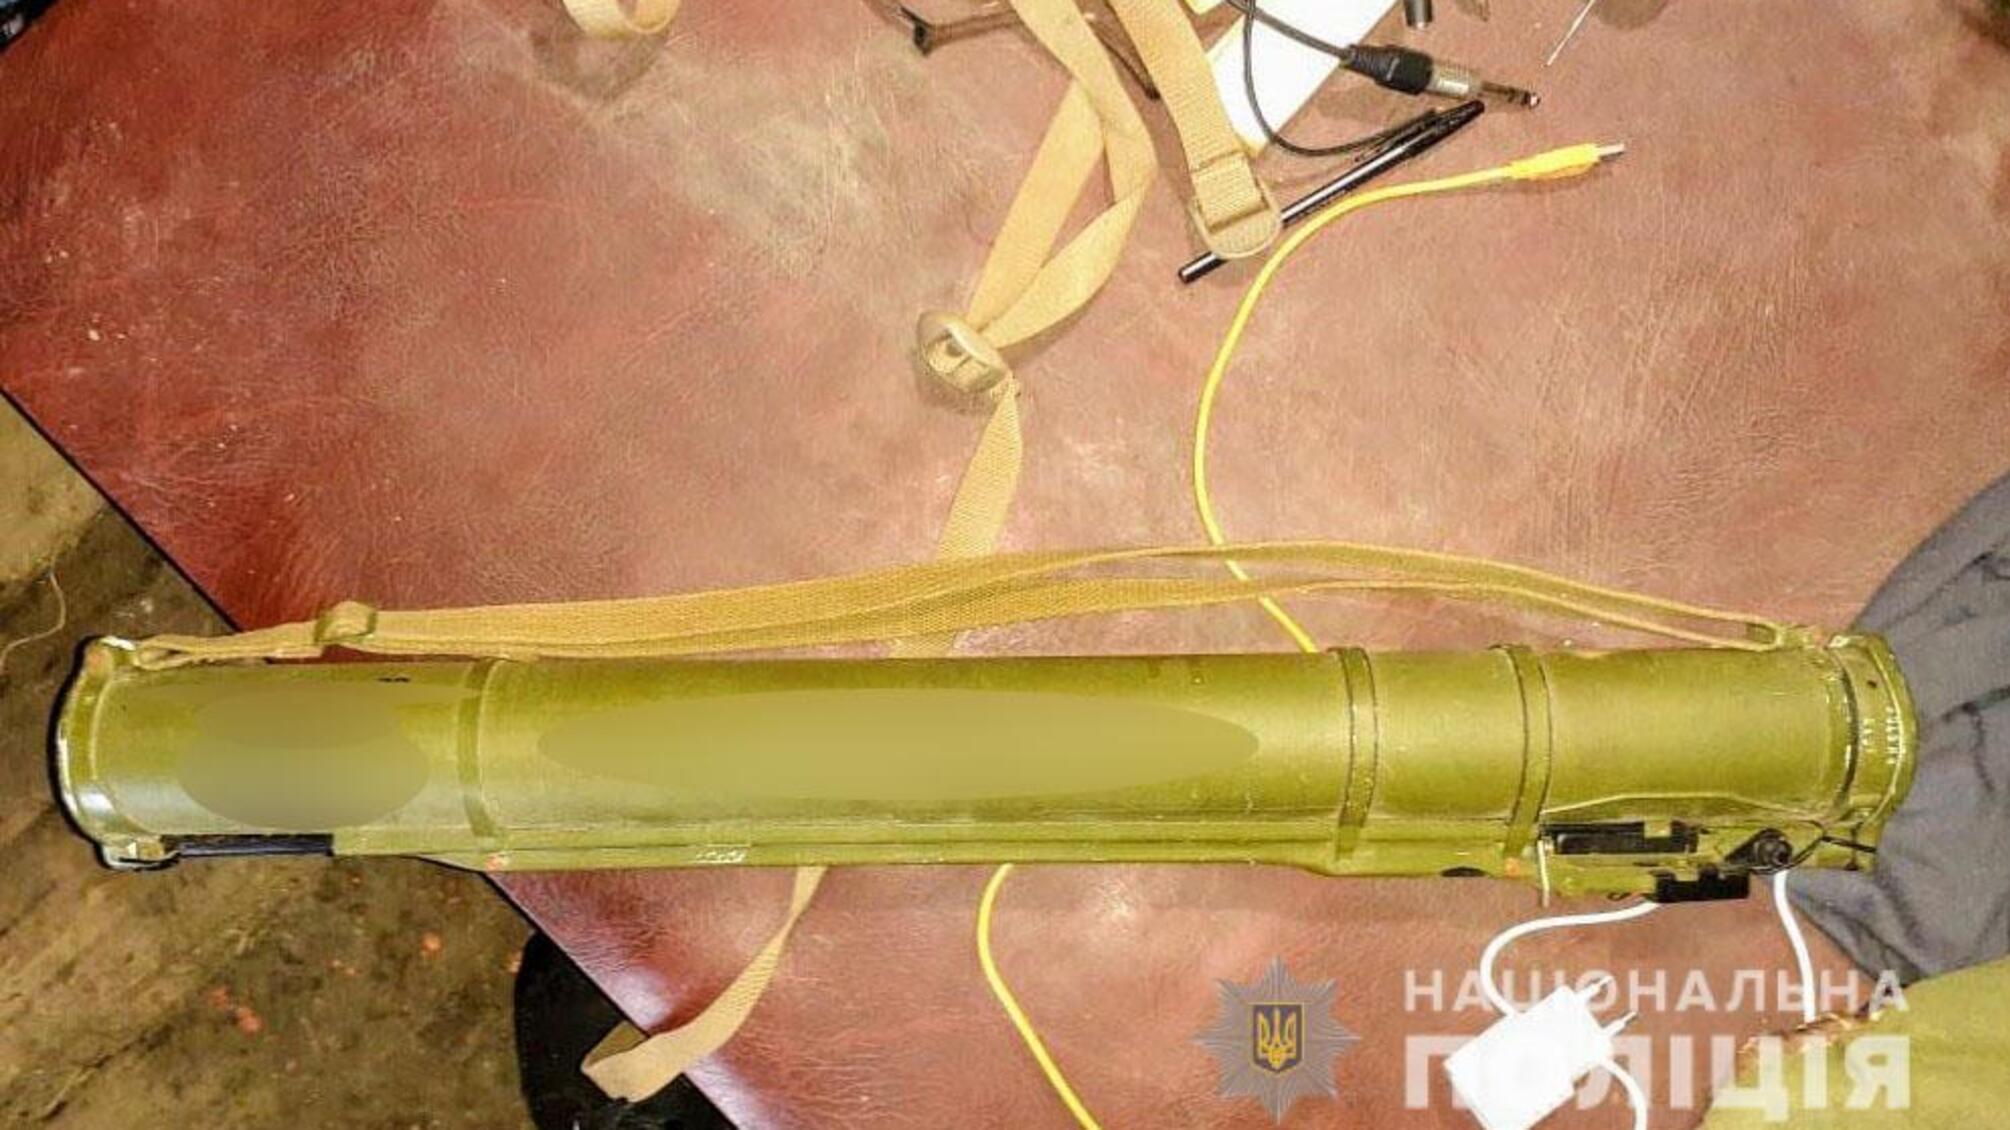 Херсонські правоохоронці вилучили арсенал військових засобів ураження в будинку жителя Скадовська